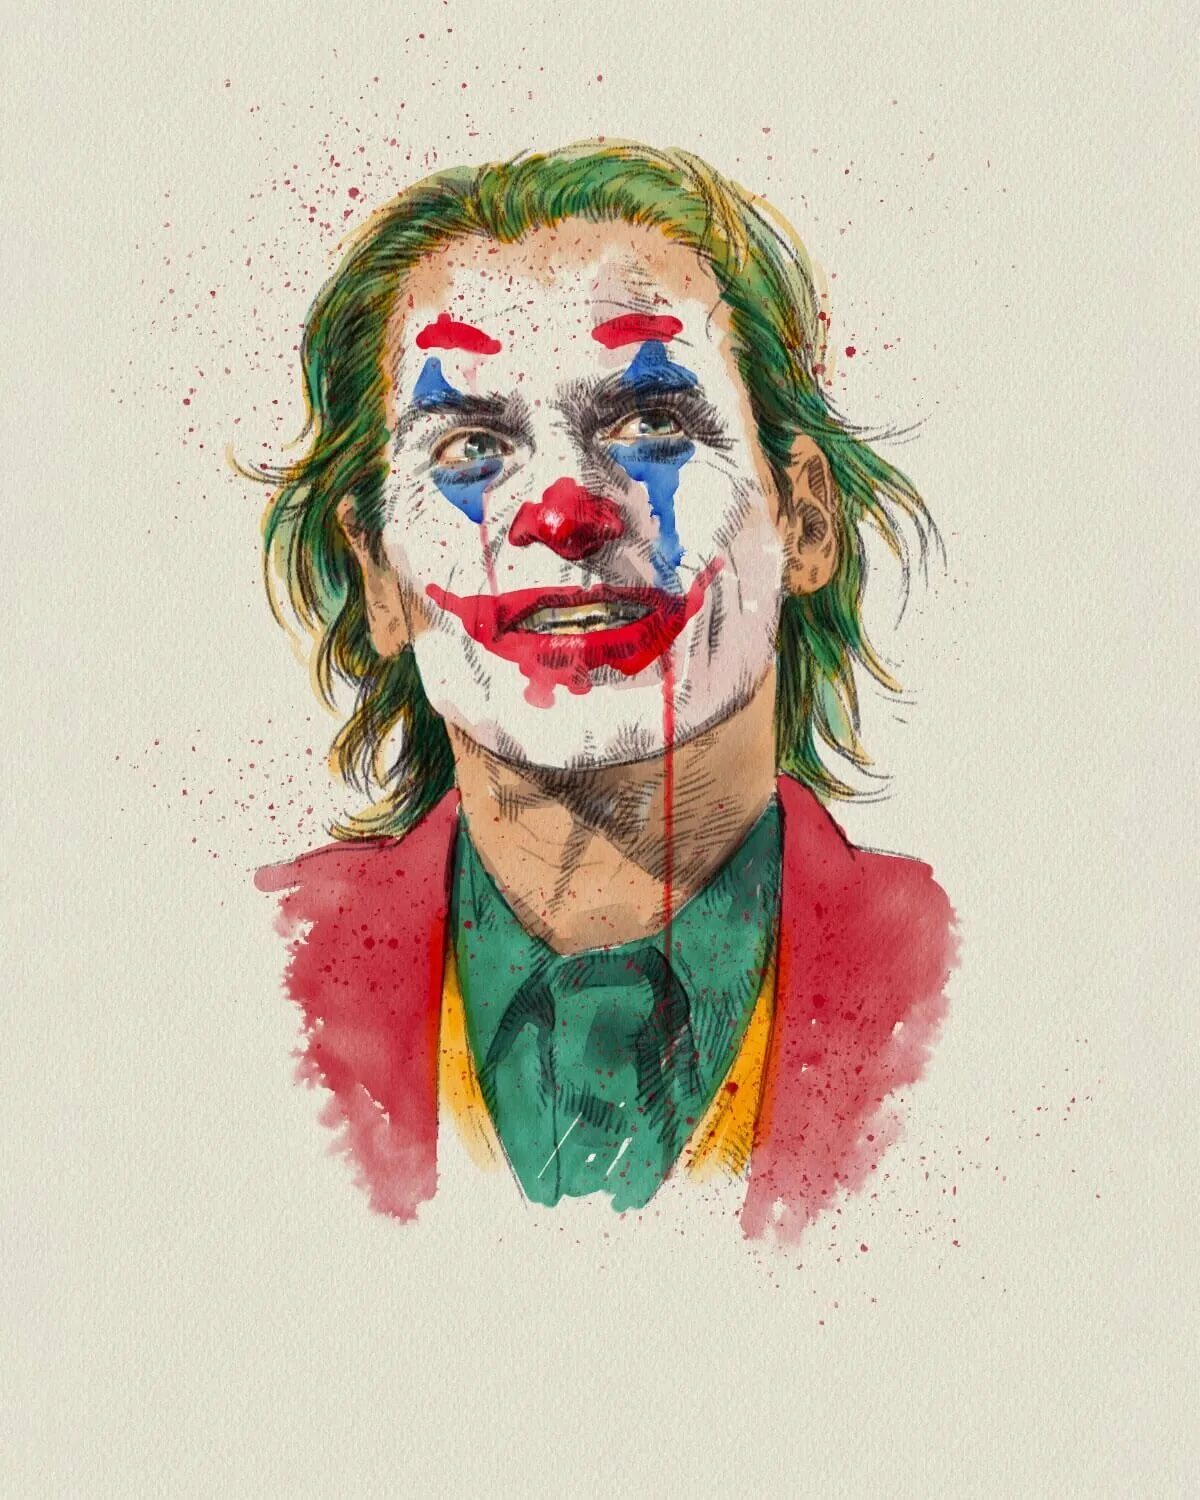 Joker art. Джокер Хоакин Феникс арт. Джокер Хоакин 2019 арт.